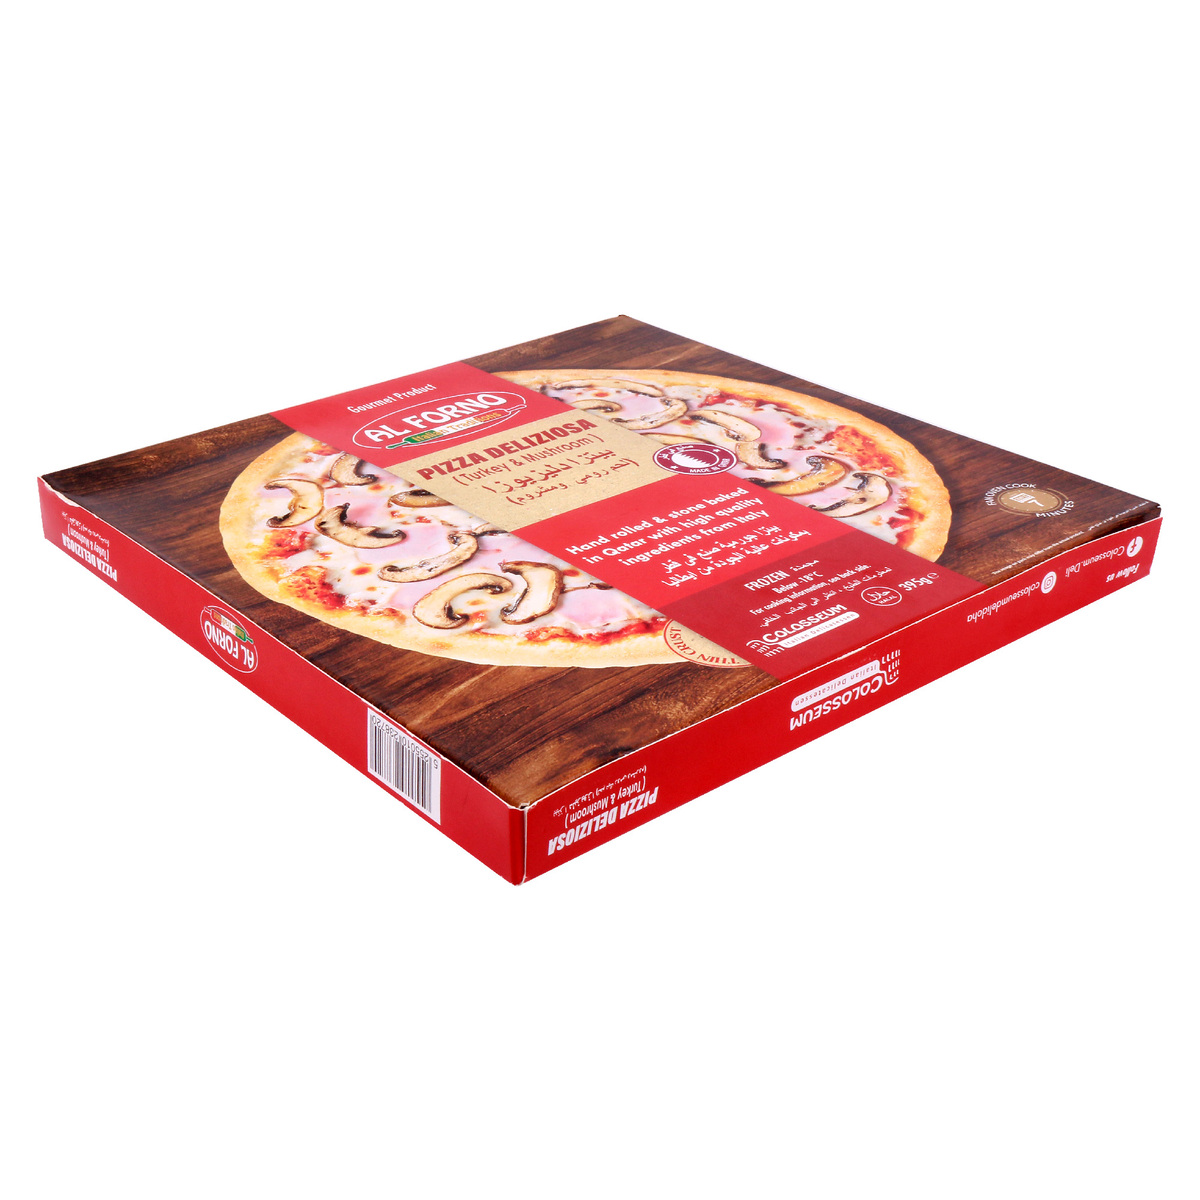 Al Forno Pizza Deliziosa Turkey & Mushroom 395g